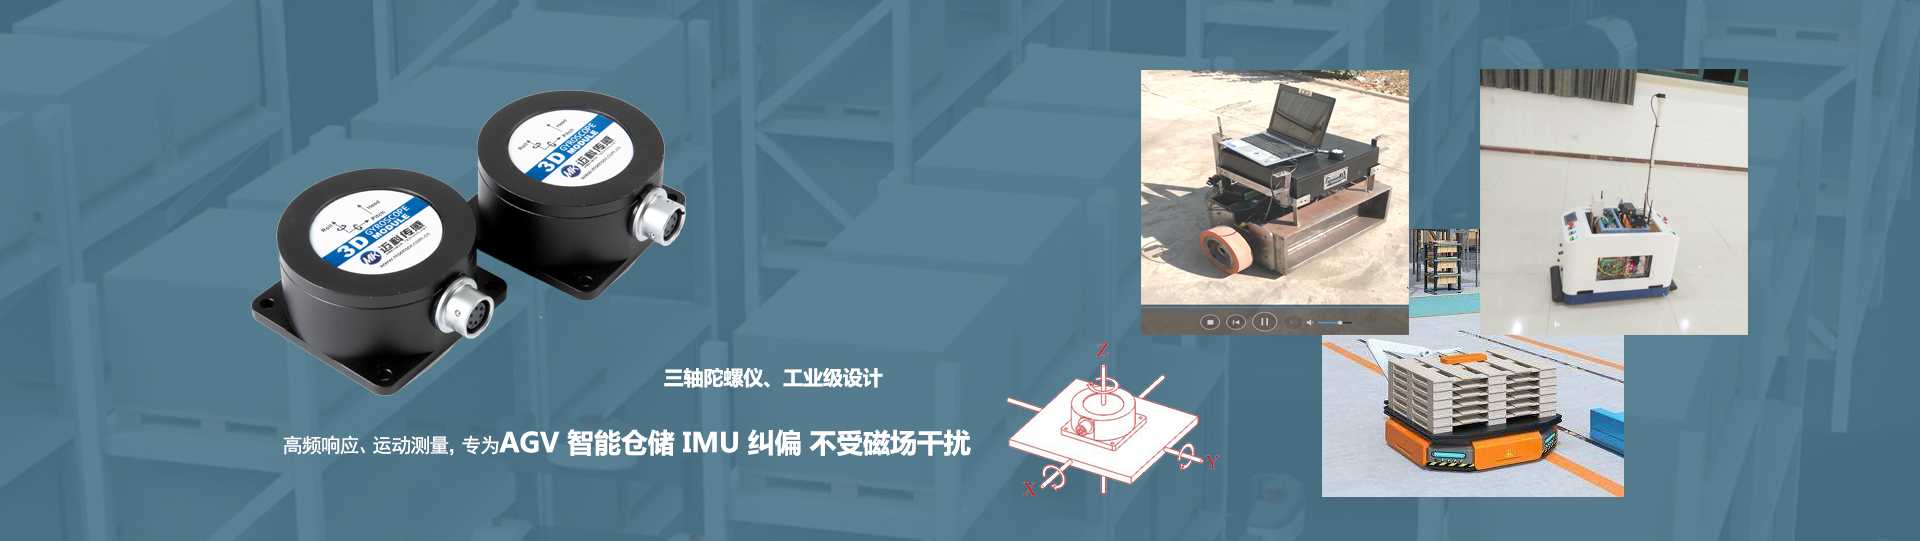 ML726陀螺儀導航定位-無(wú)錫邁科傳感科技有限公司